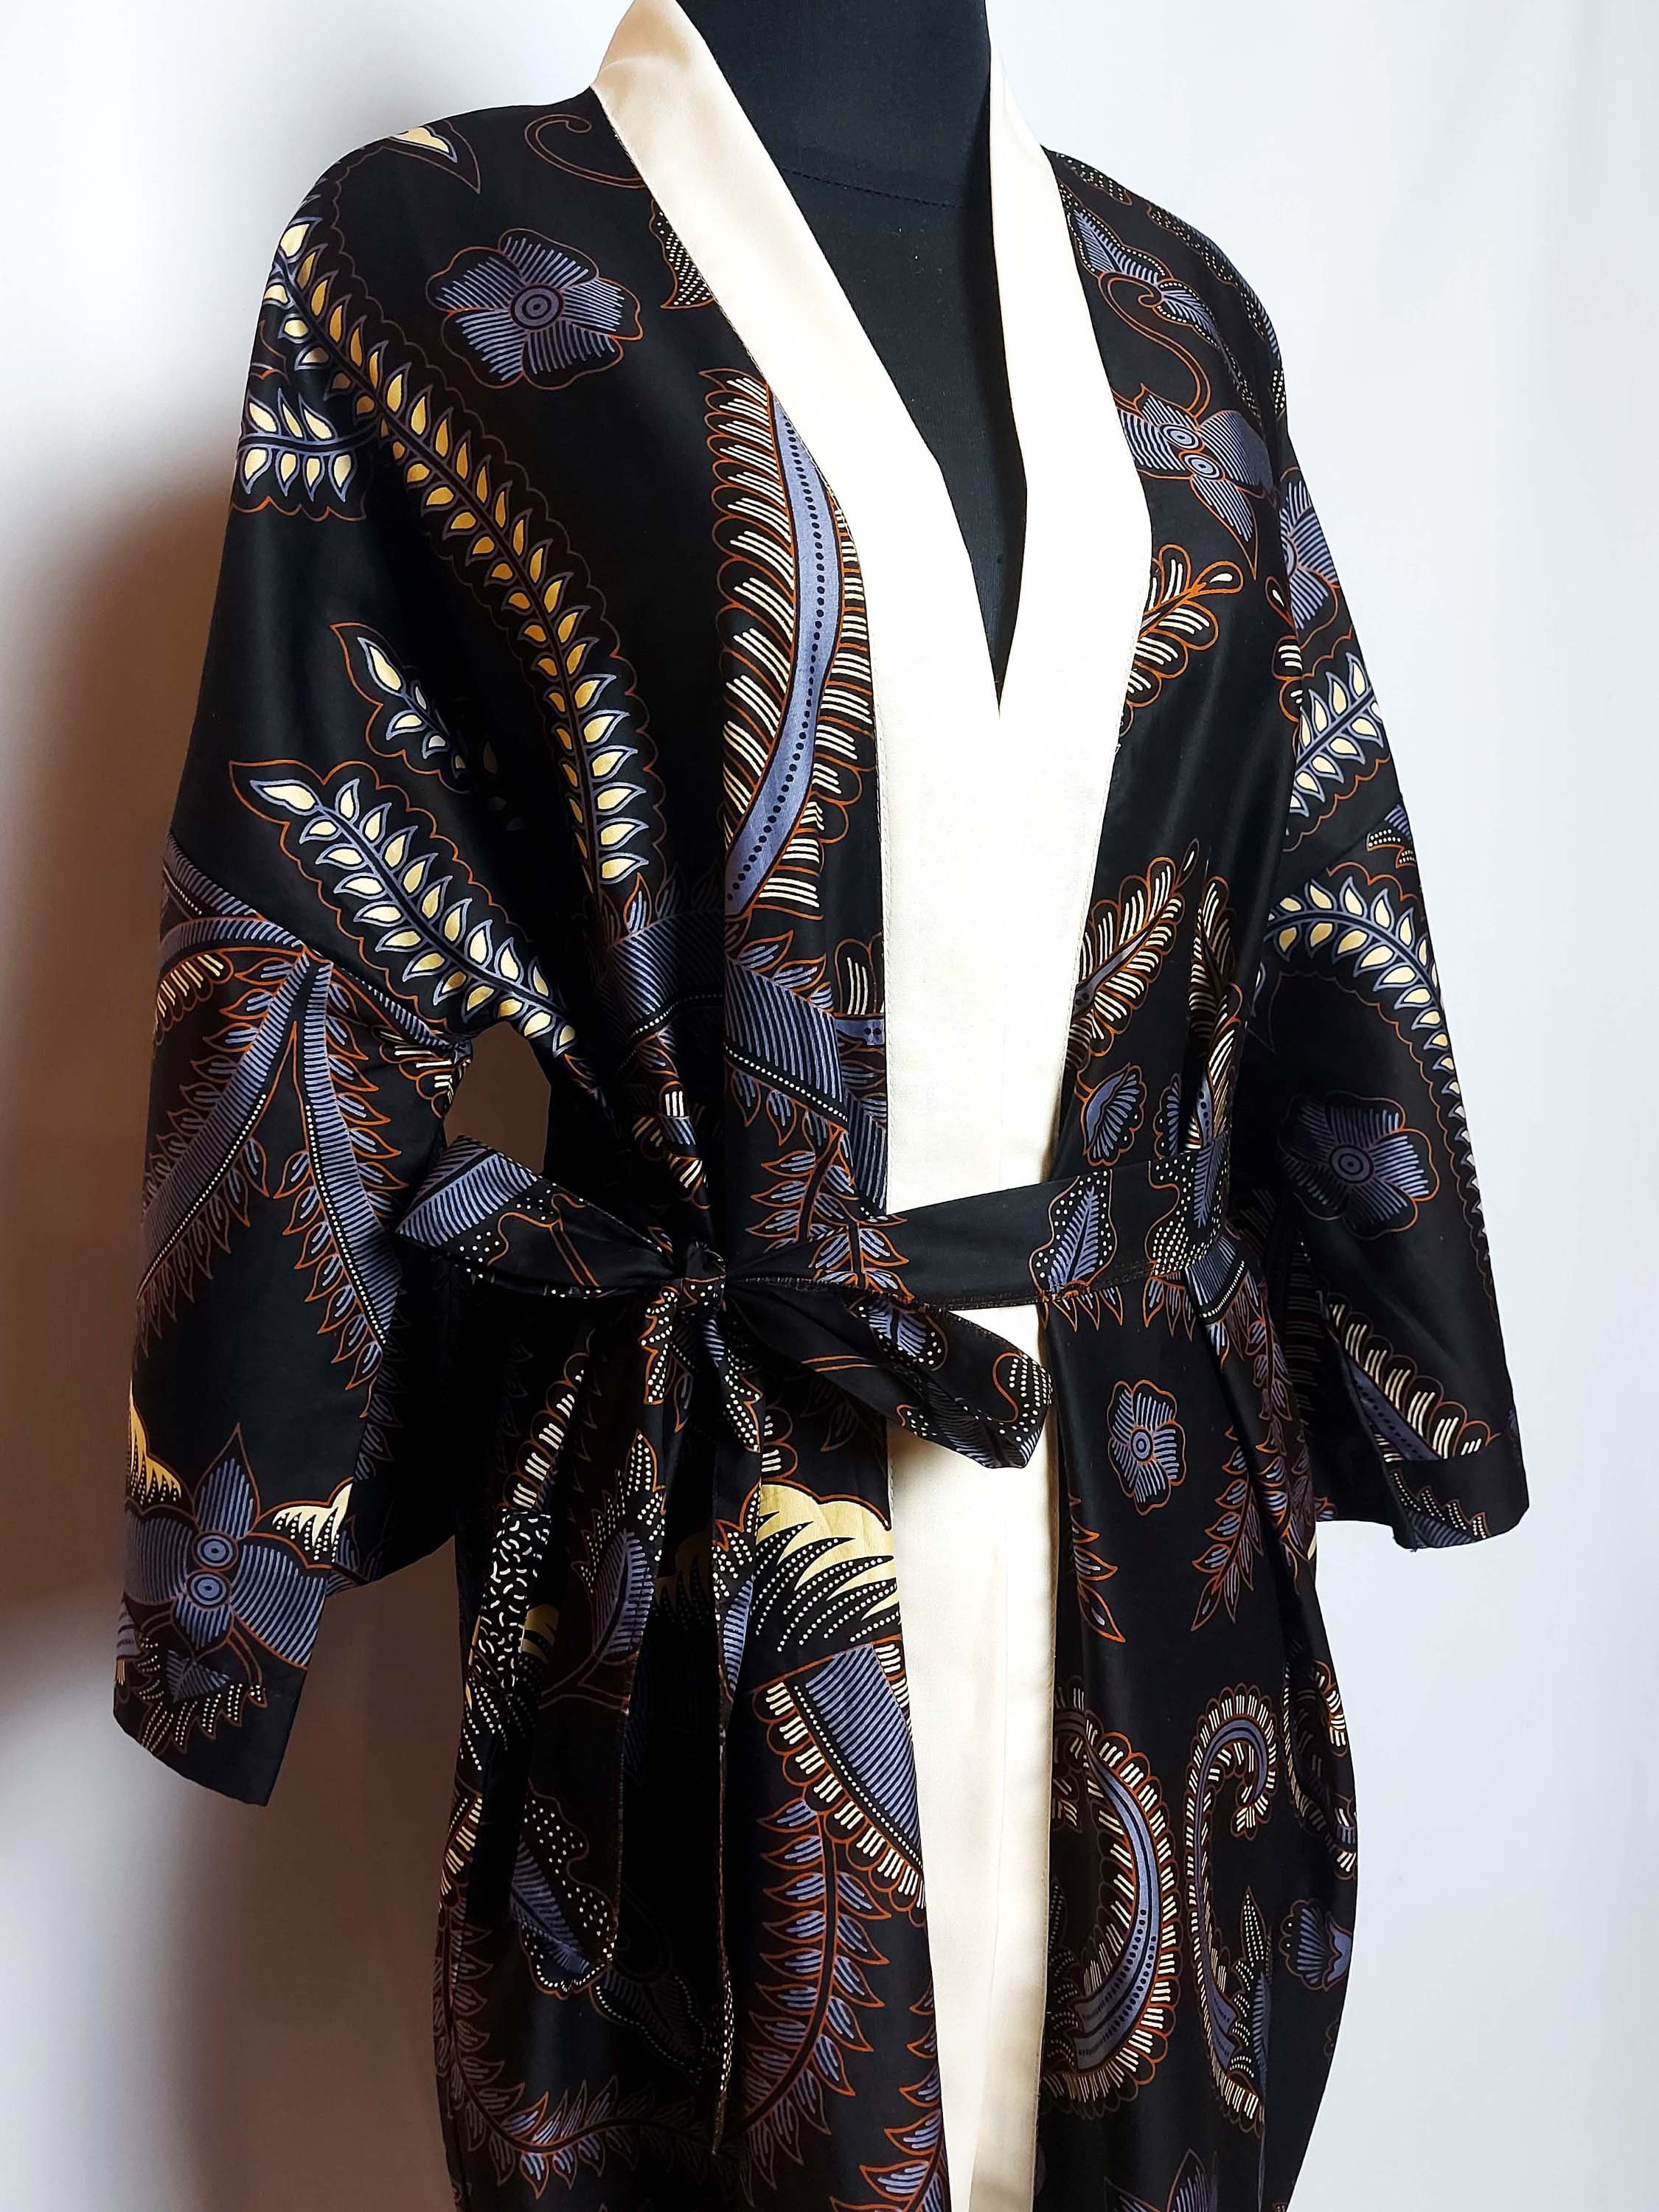 Kimono Robe Batik in Black and Beige Cotton Robe Kimono - Etsy